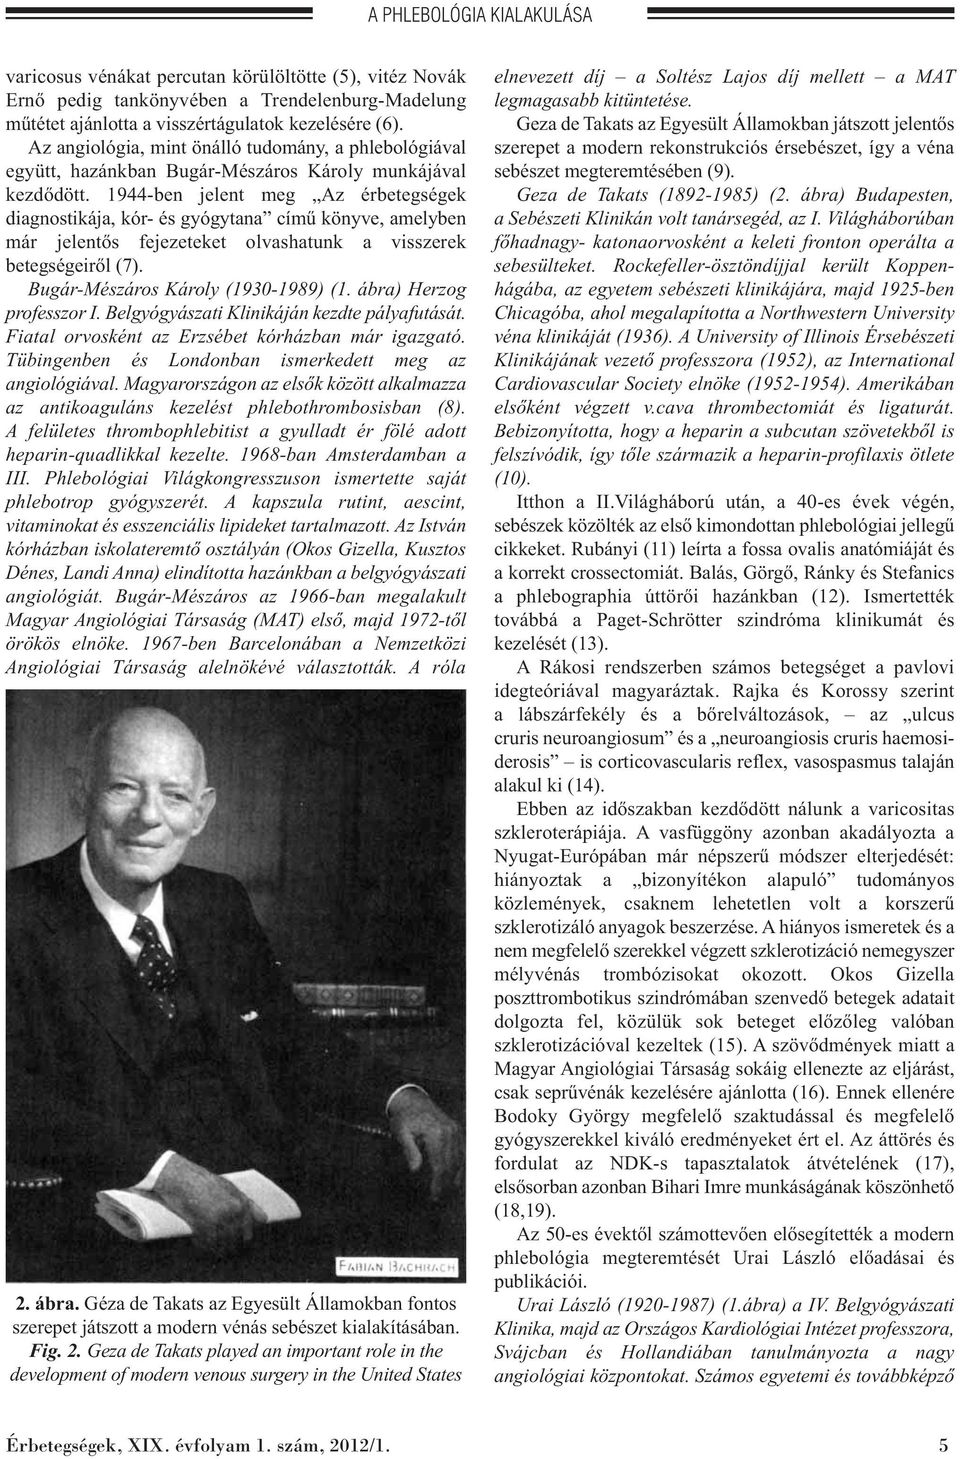 1944-ben jelent meg Az érbetegségek diag nostikája, kór- és gyógytana című könyve, amelyben már jelentős fejezeteket olvashatunk a visszerek betegségeiről (7). Bugár-Mészáros Károly (1930-1989) (1.